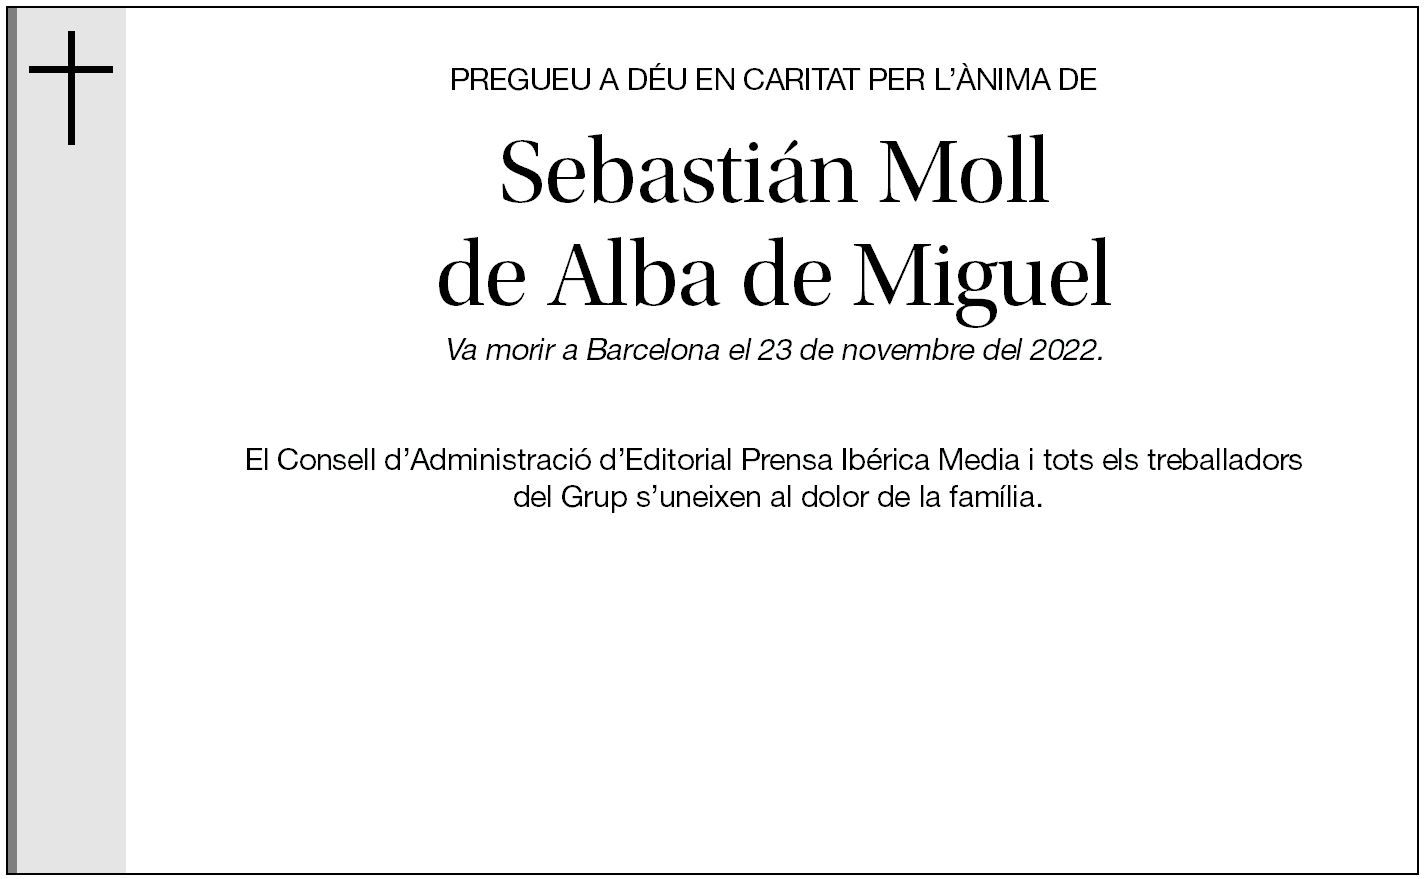 Sebastián Moll de Alba de Miguel